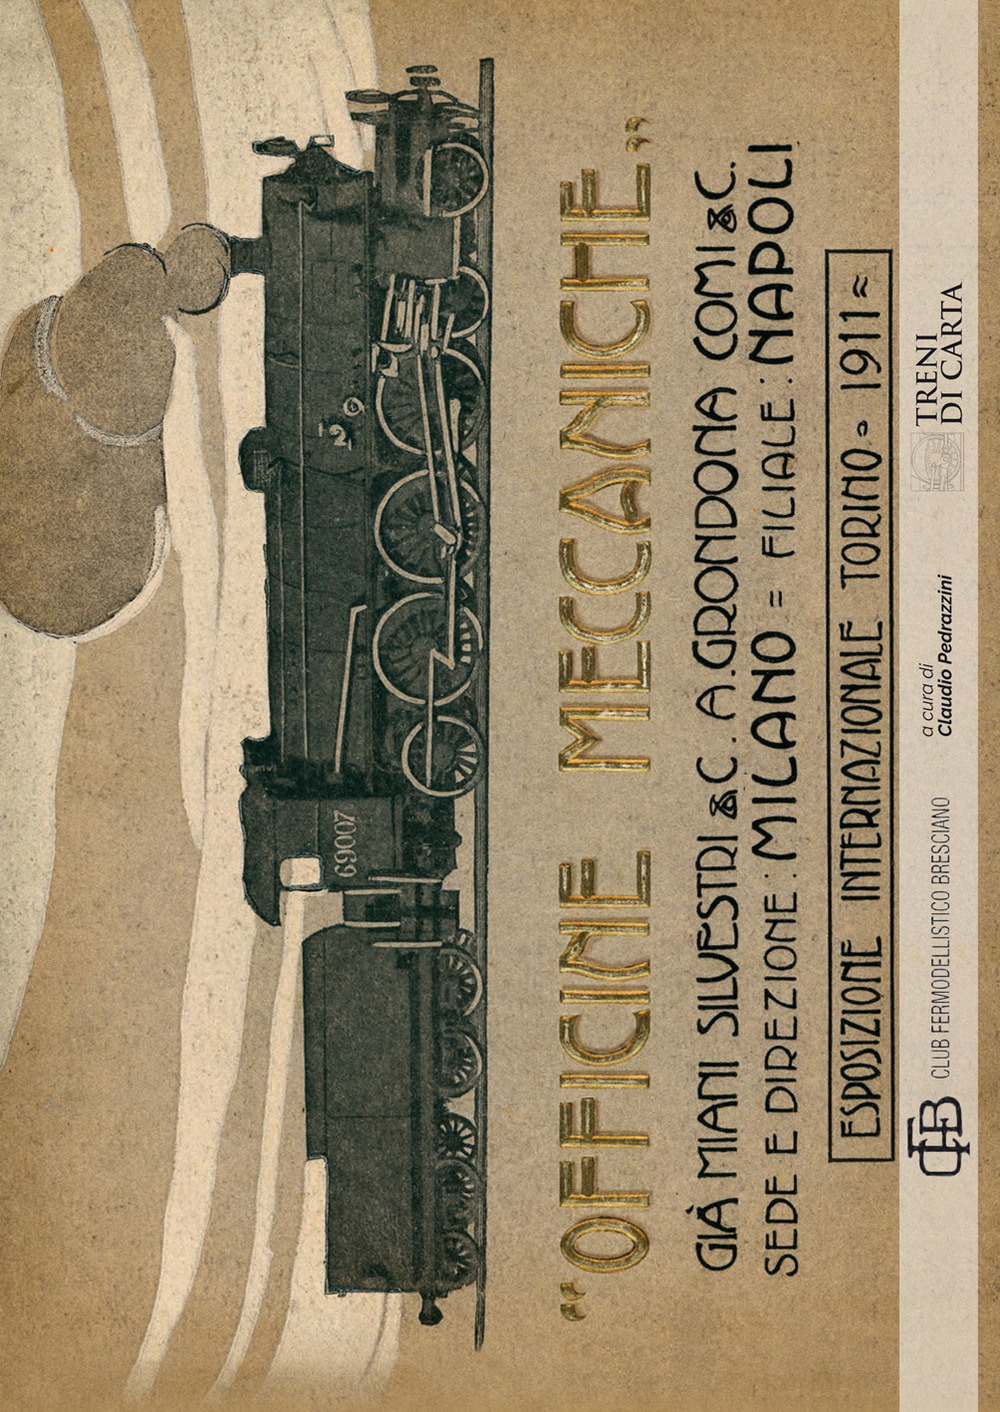 Ristampa anastatica del catalogo delle officine meccaniche per l'esposizione internazionale Torino (rist. anast. 1911)